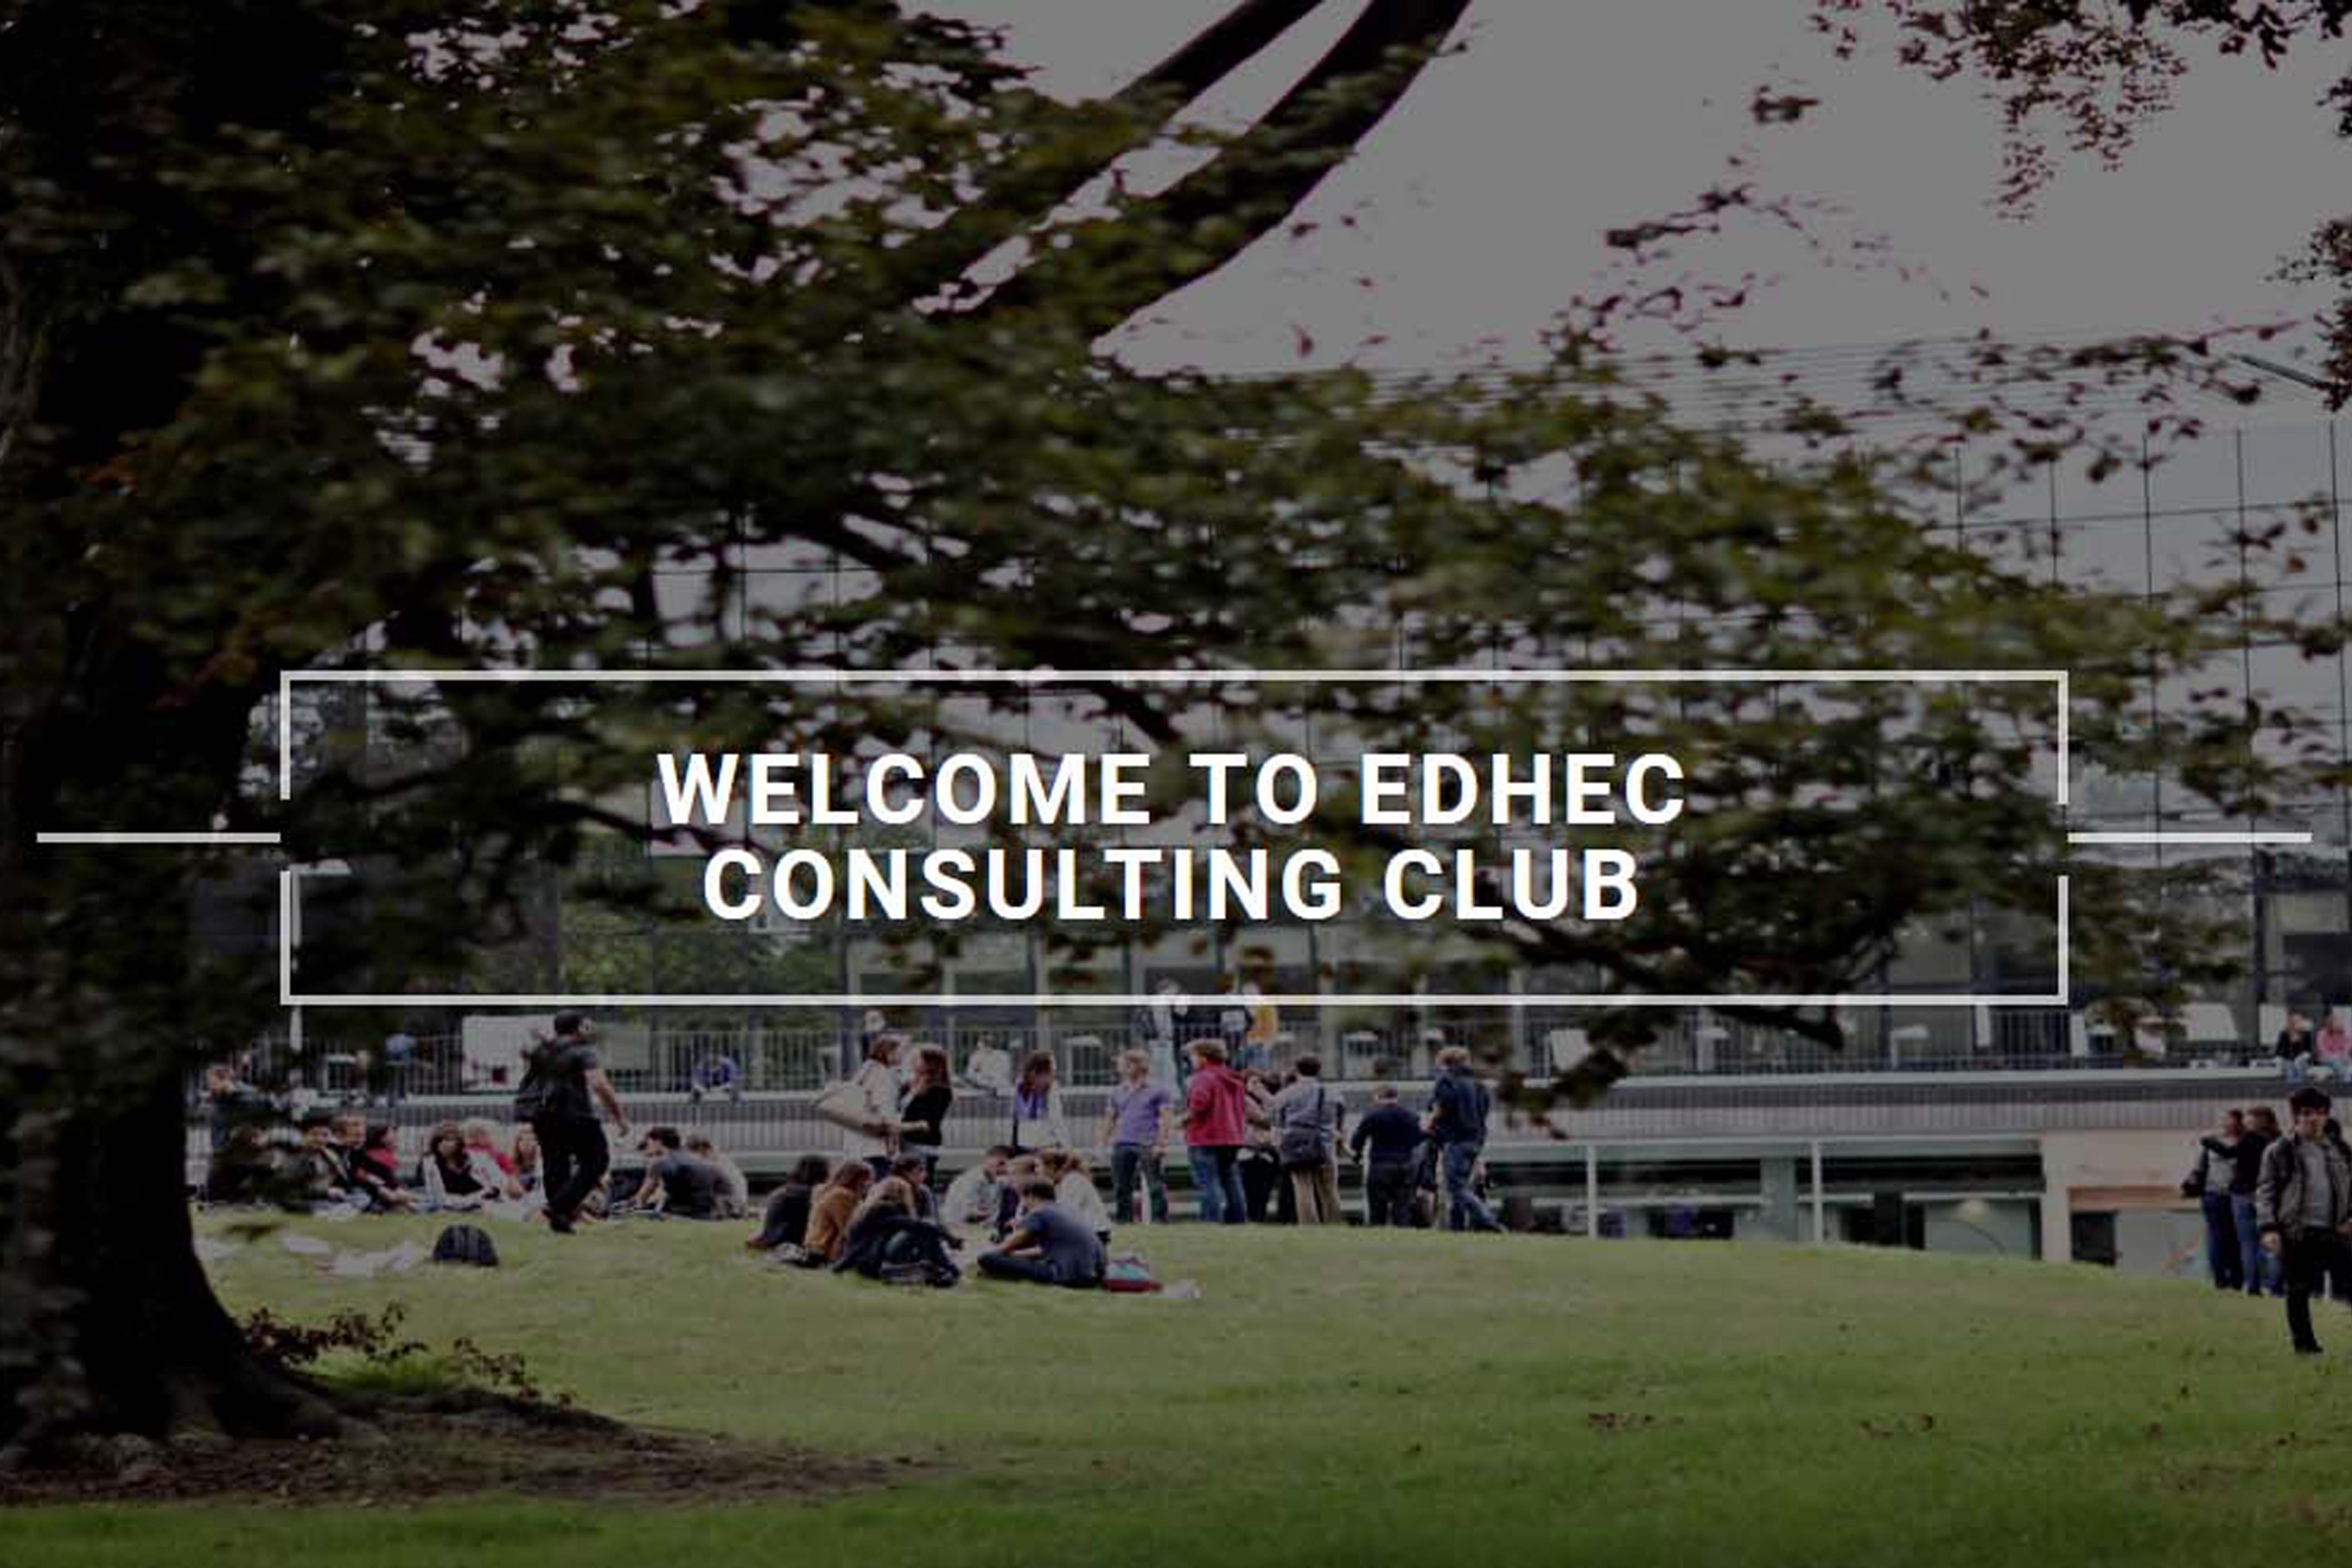 EDHEC Consulting Club